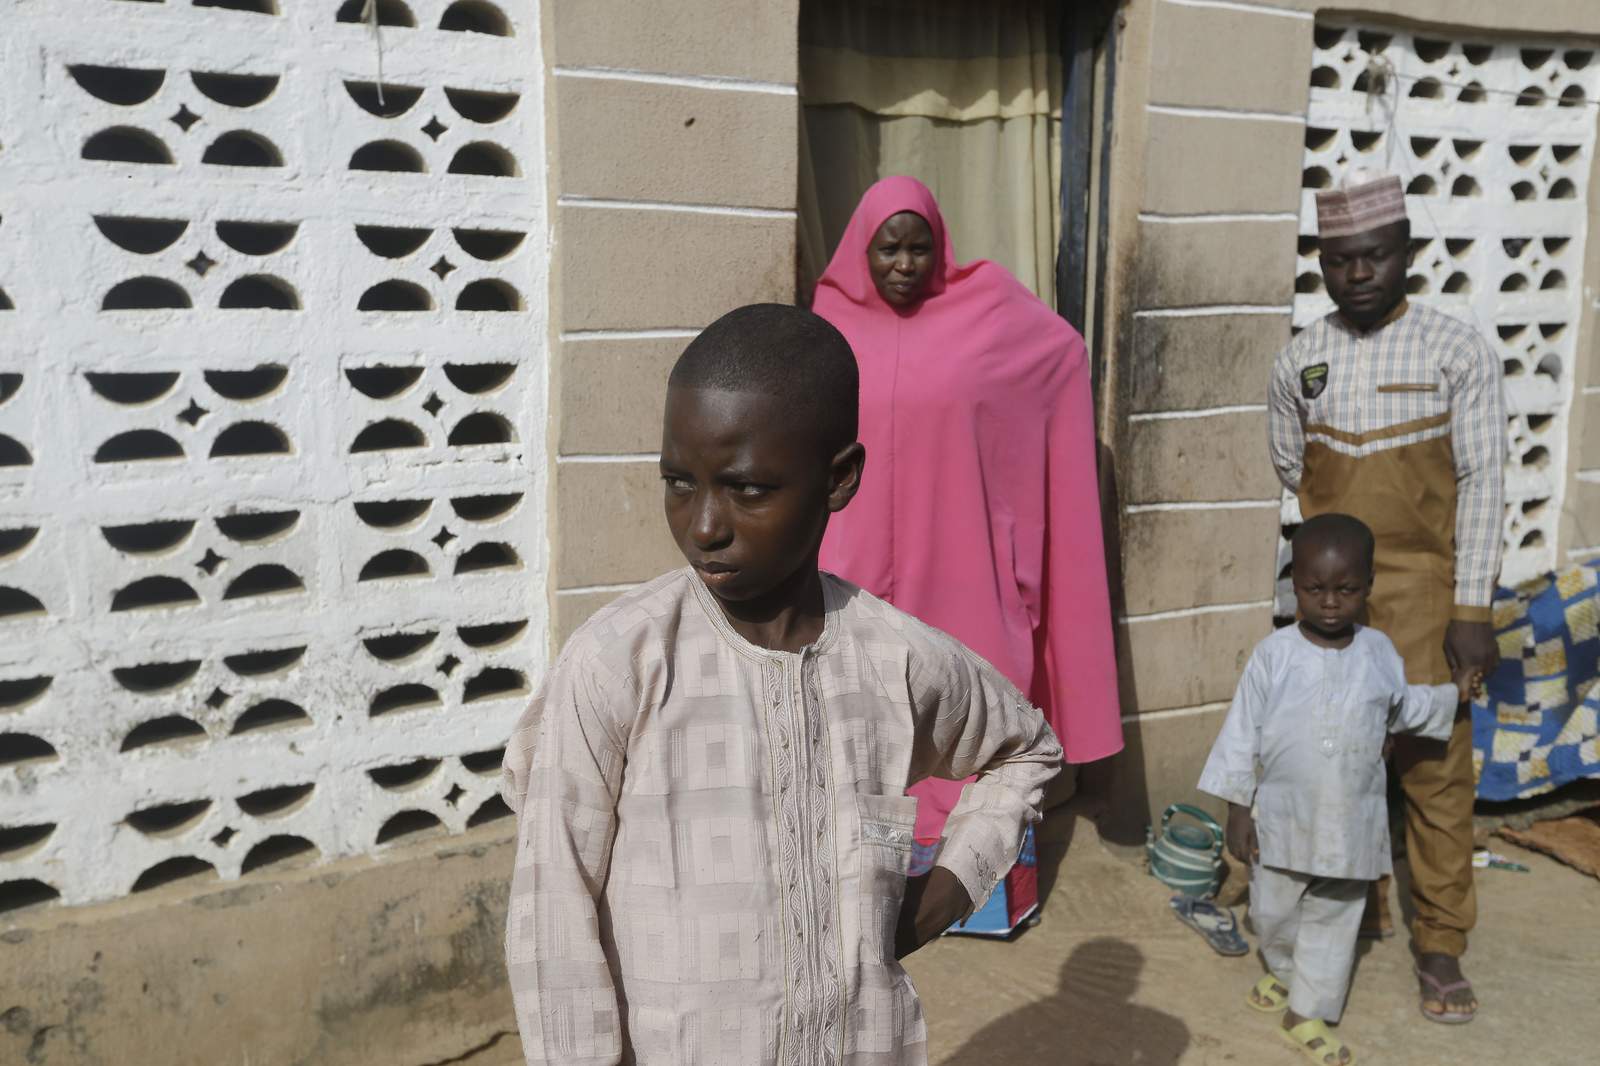 Amid freed Nigeria schoolboys' joyful reunions, fear lingers